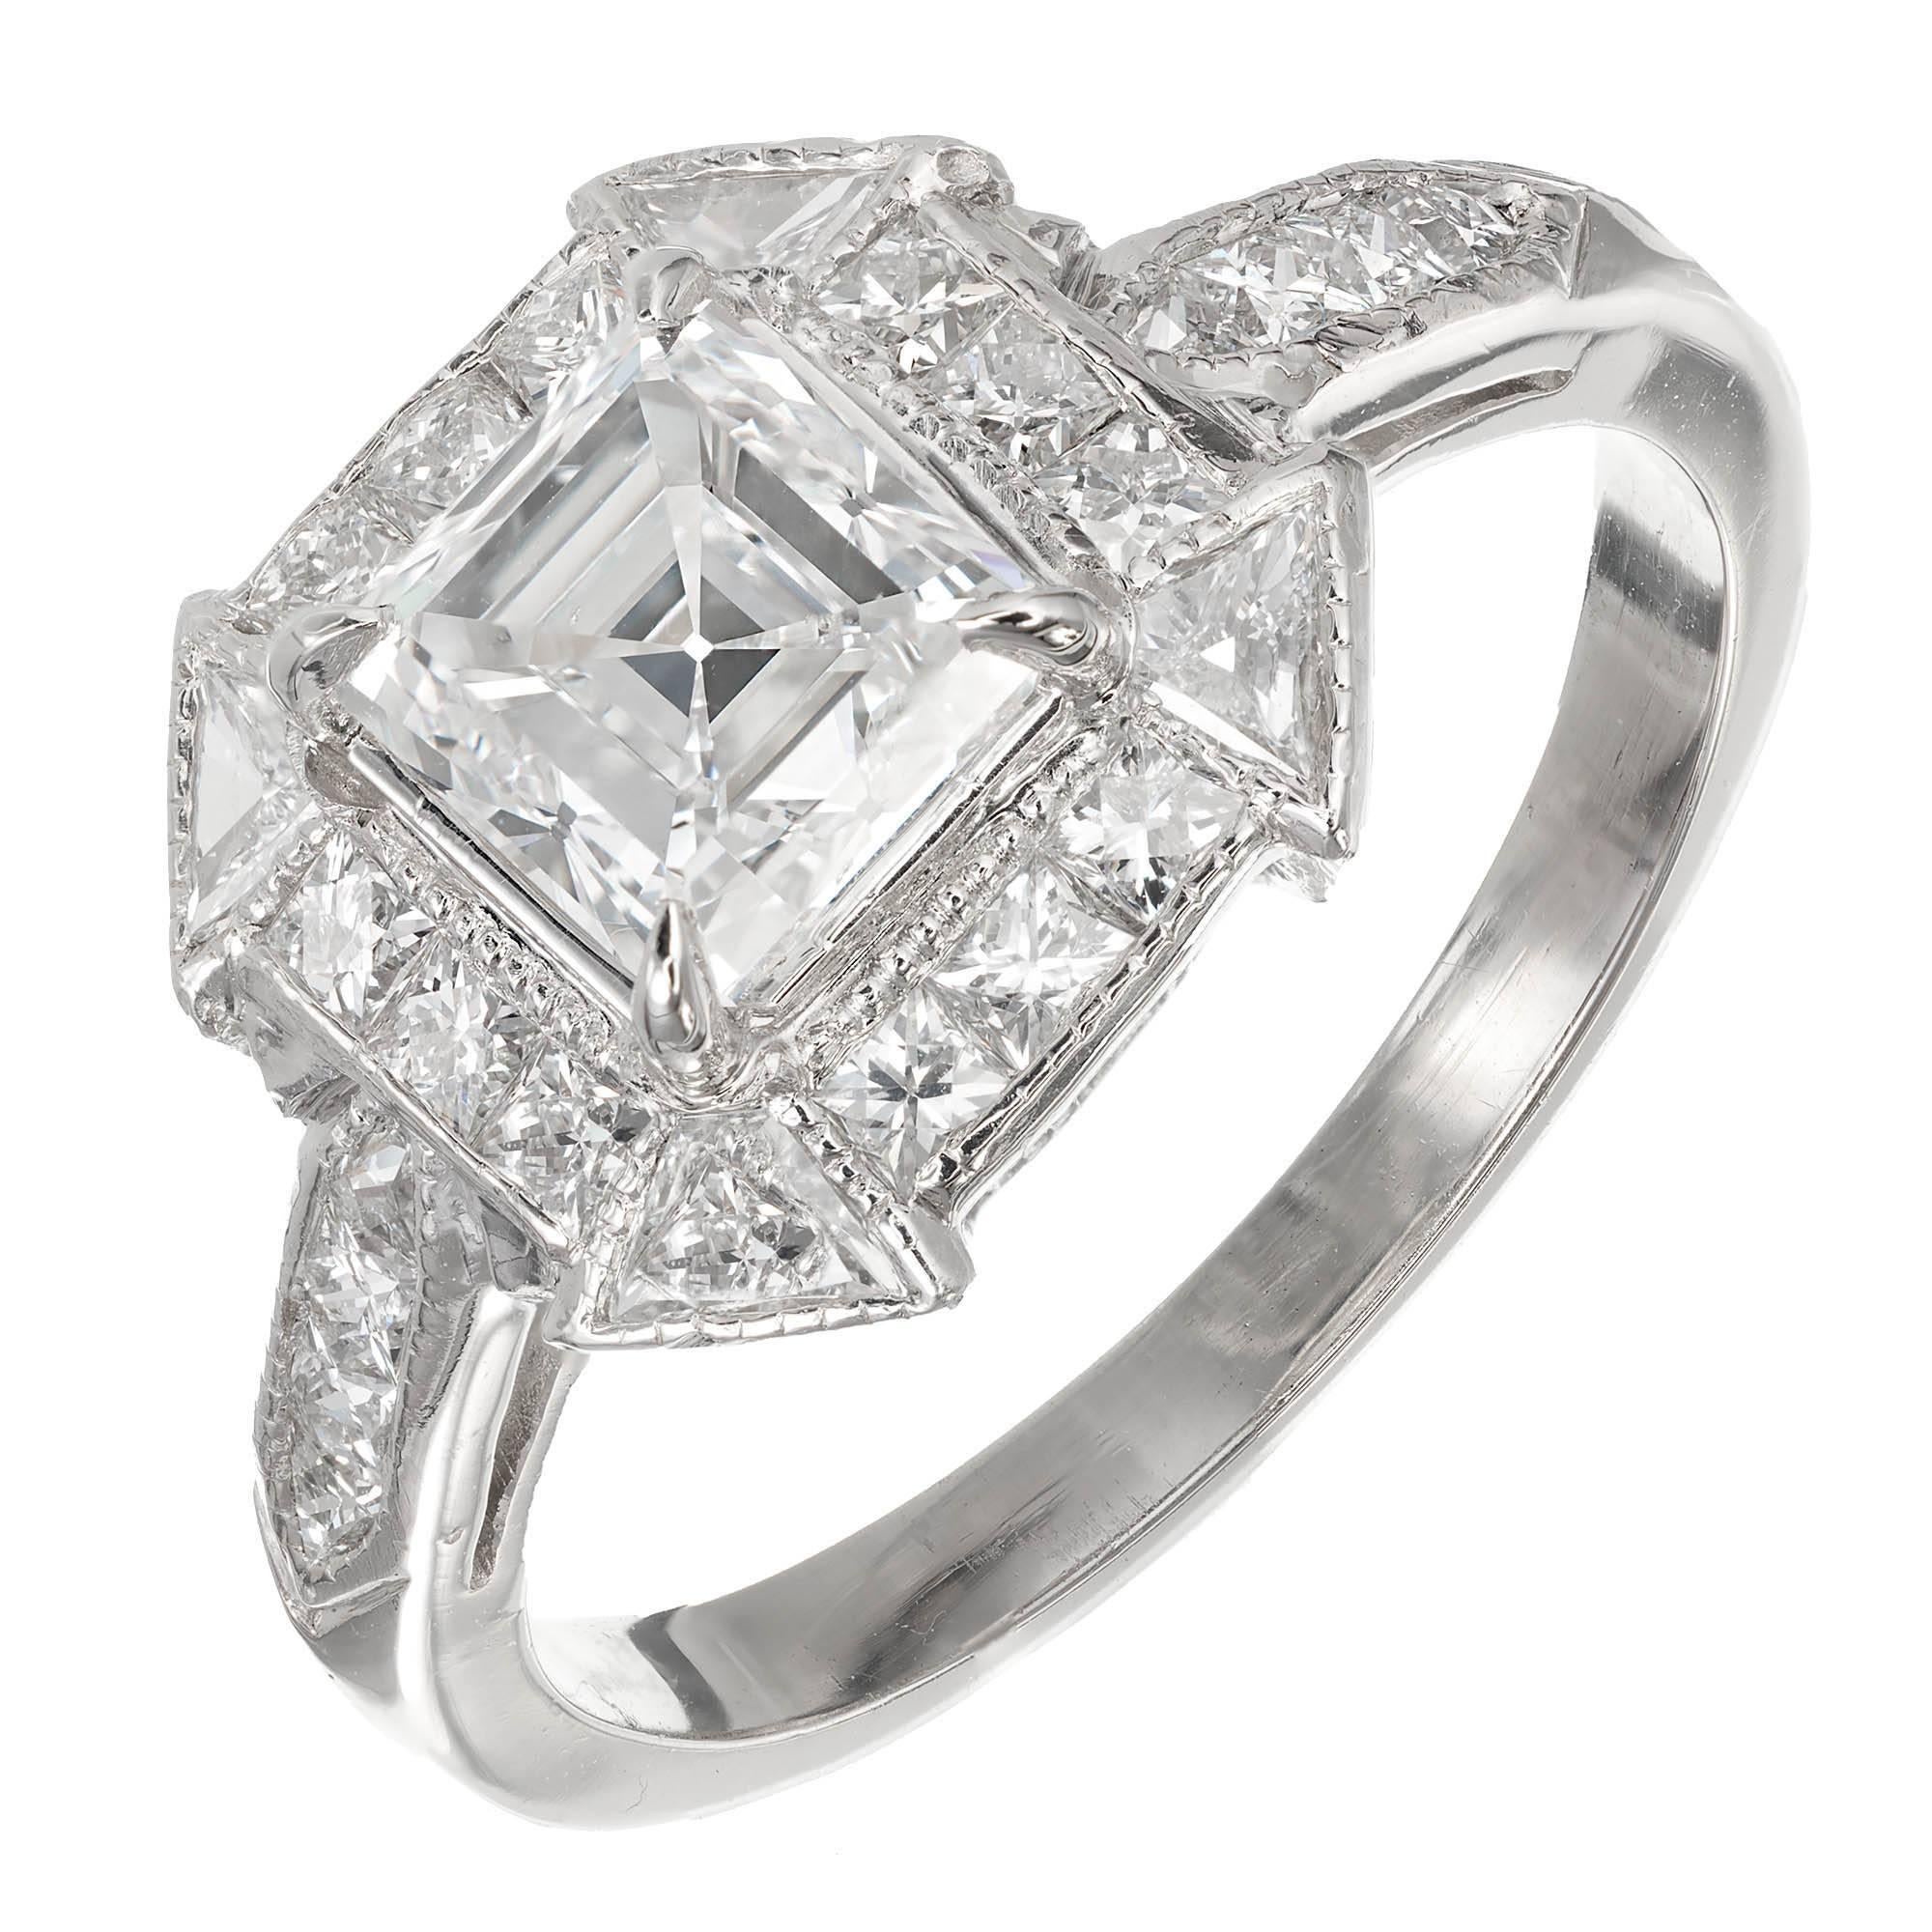 Peter Suchy 1.21 Carat Asscher Cut Diamond Platinum Engagement Ring